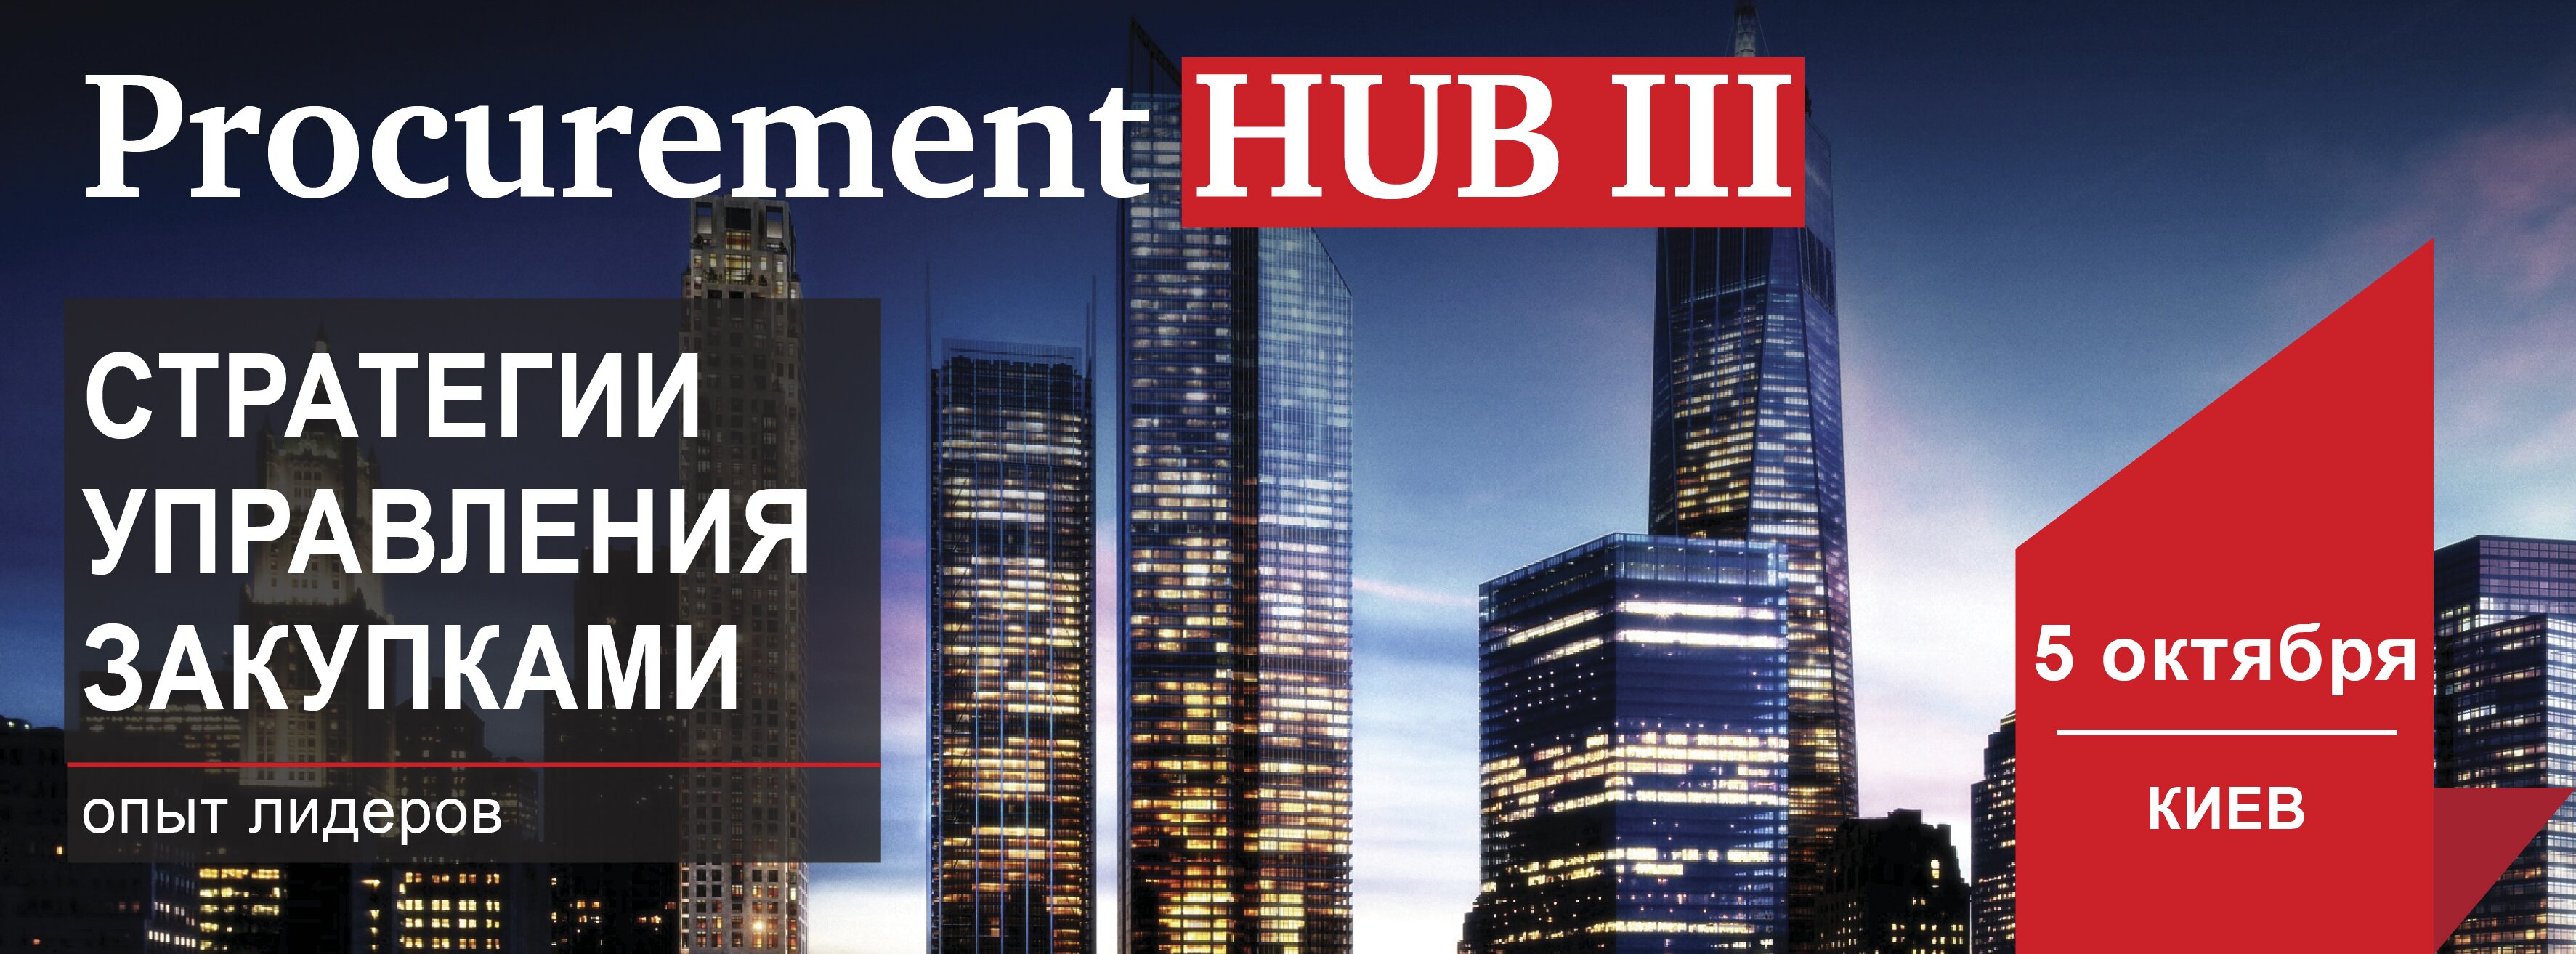 Procurement HUB (1)